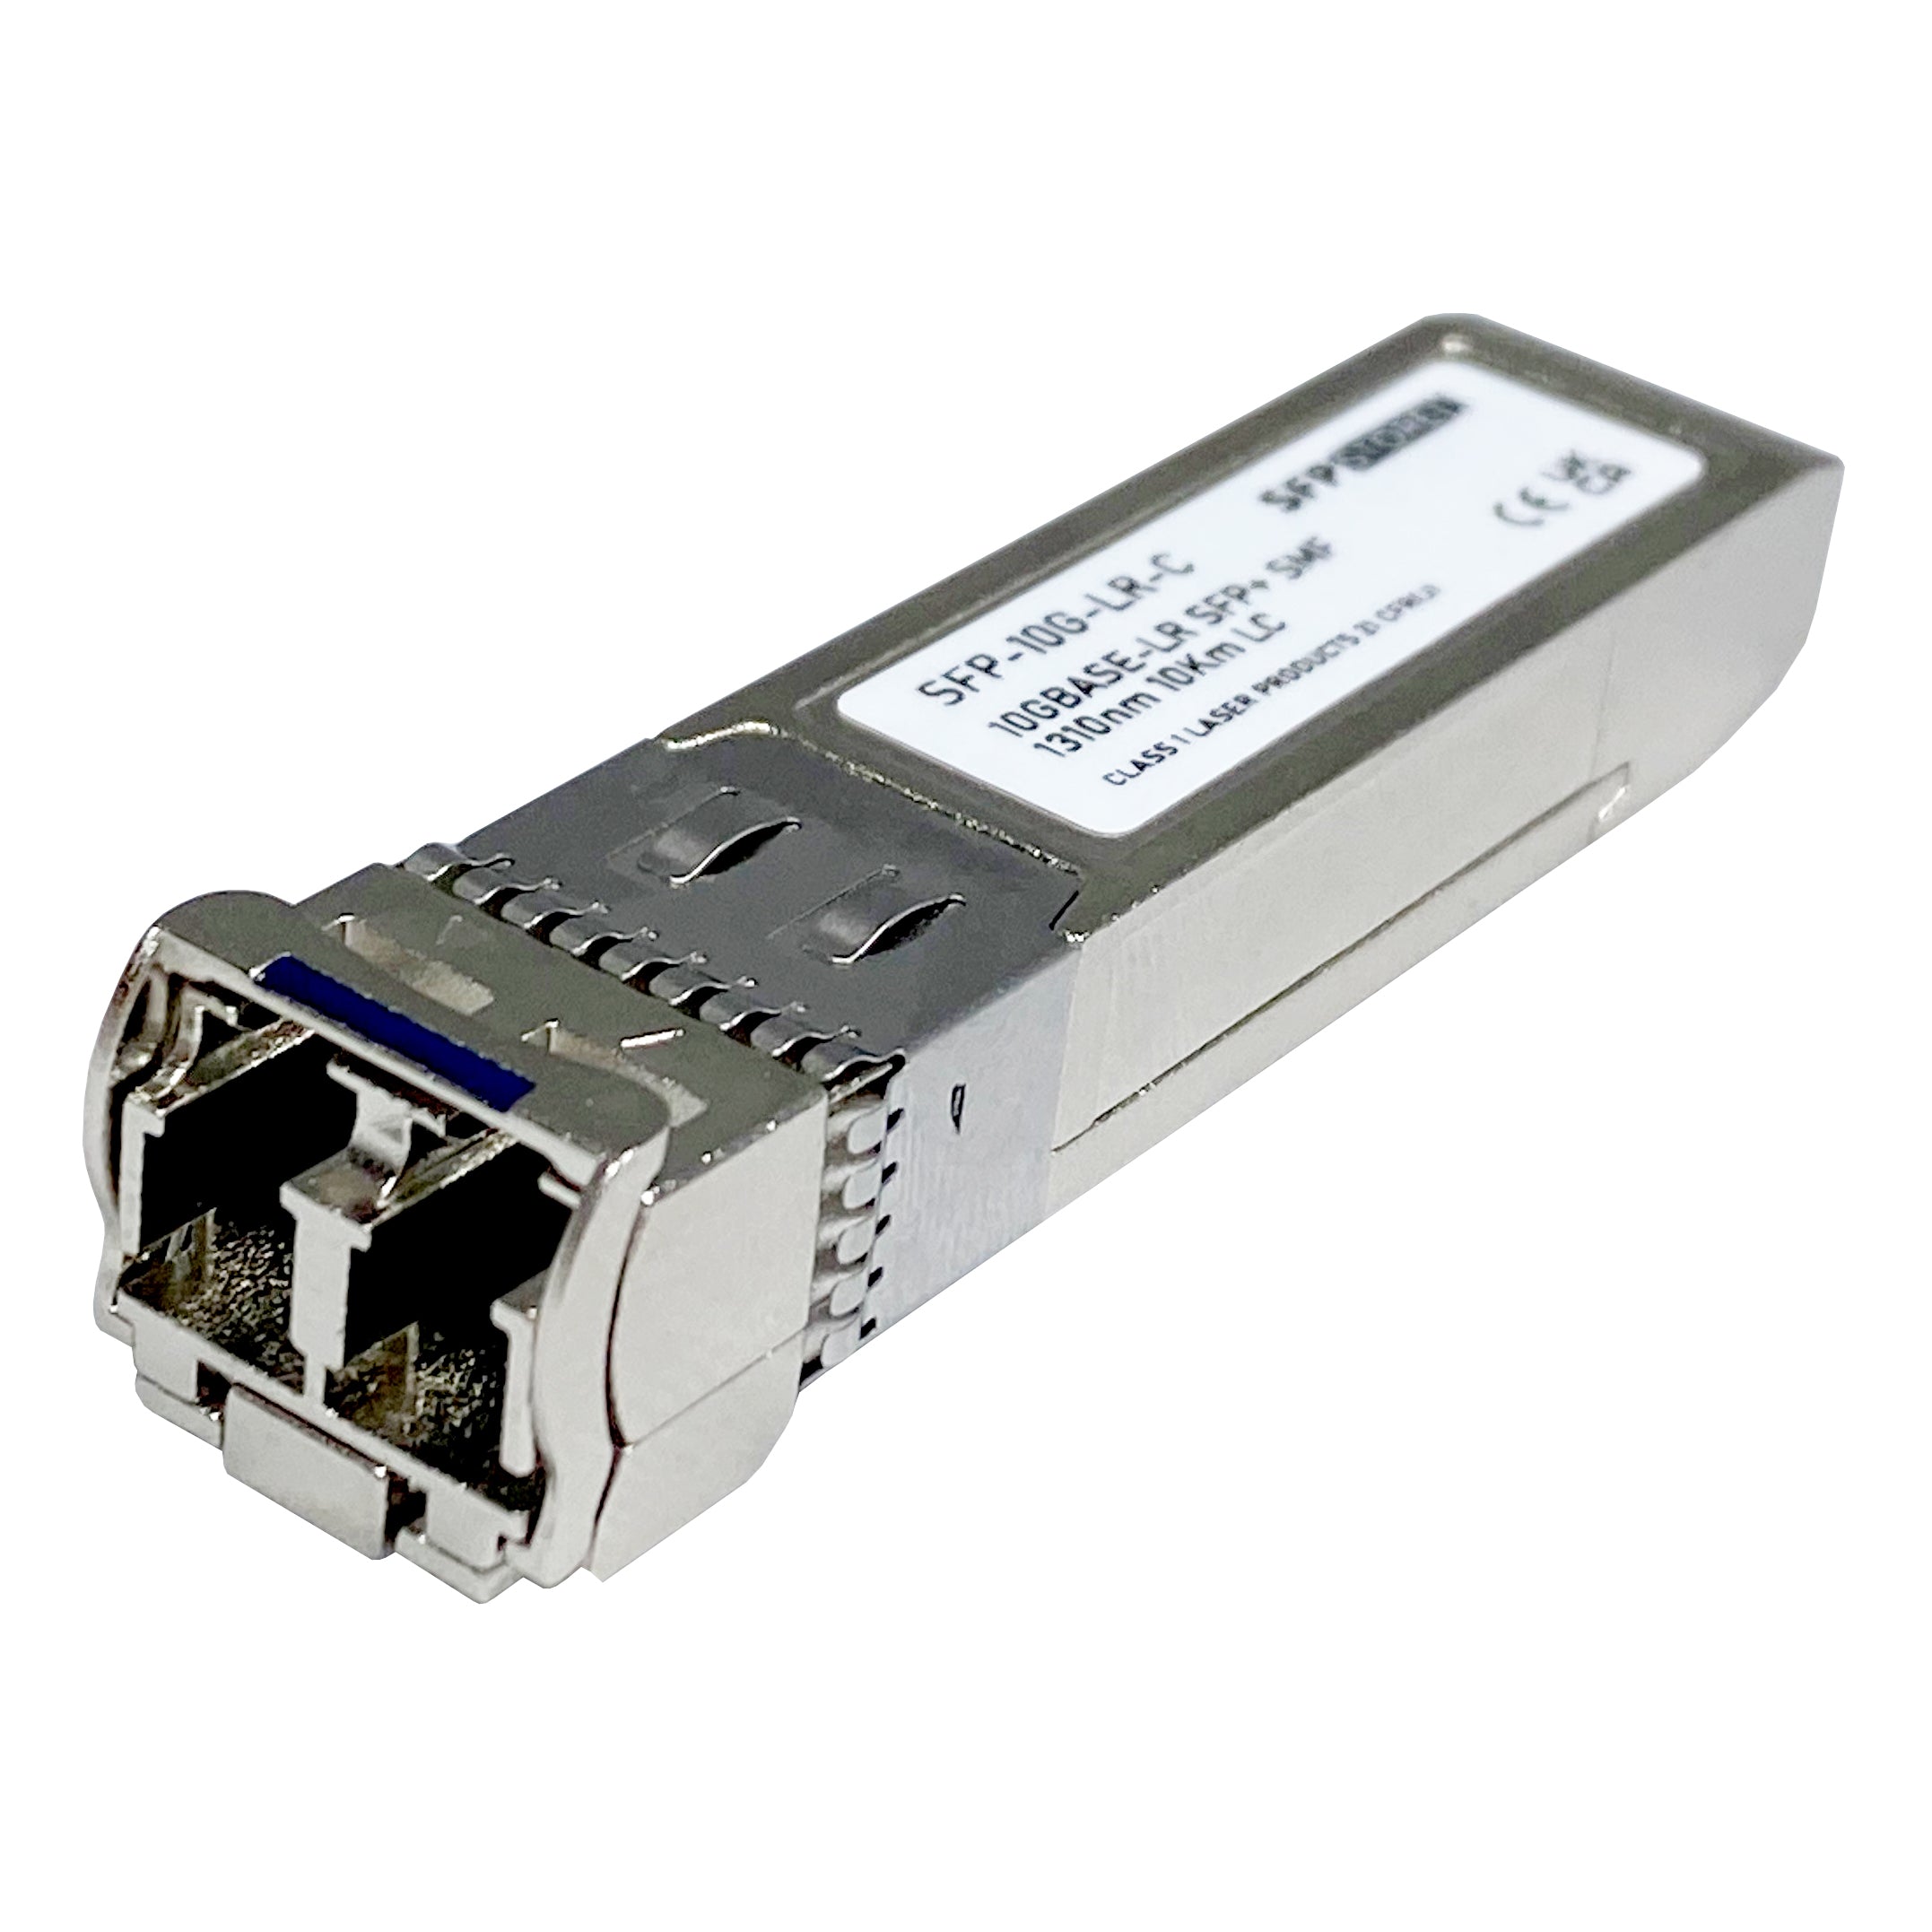 MA-SFP-10GB-LR-C Cisco Meraki Compatible 10G SFP+ LC Transceiver